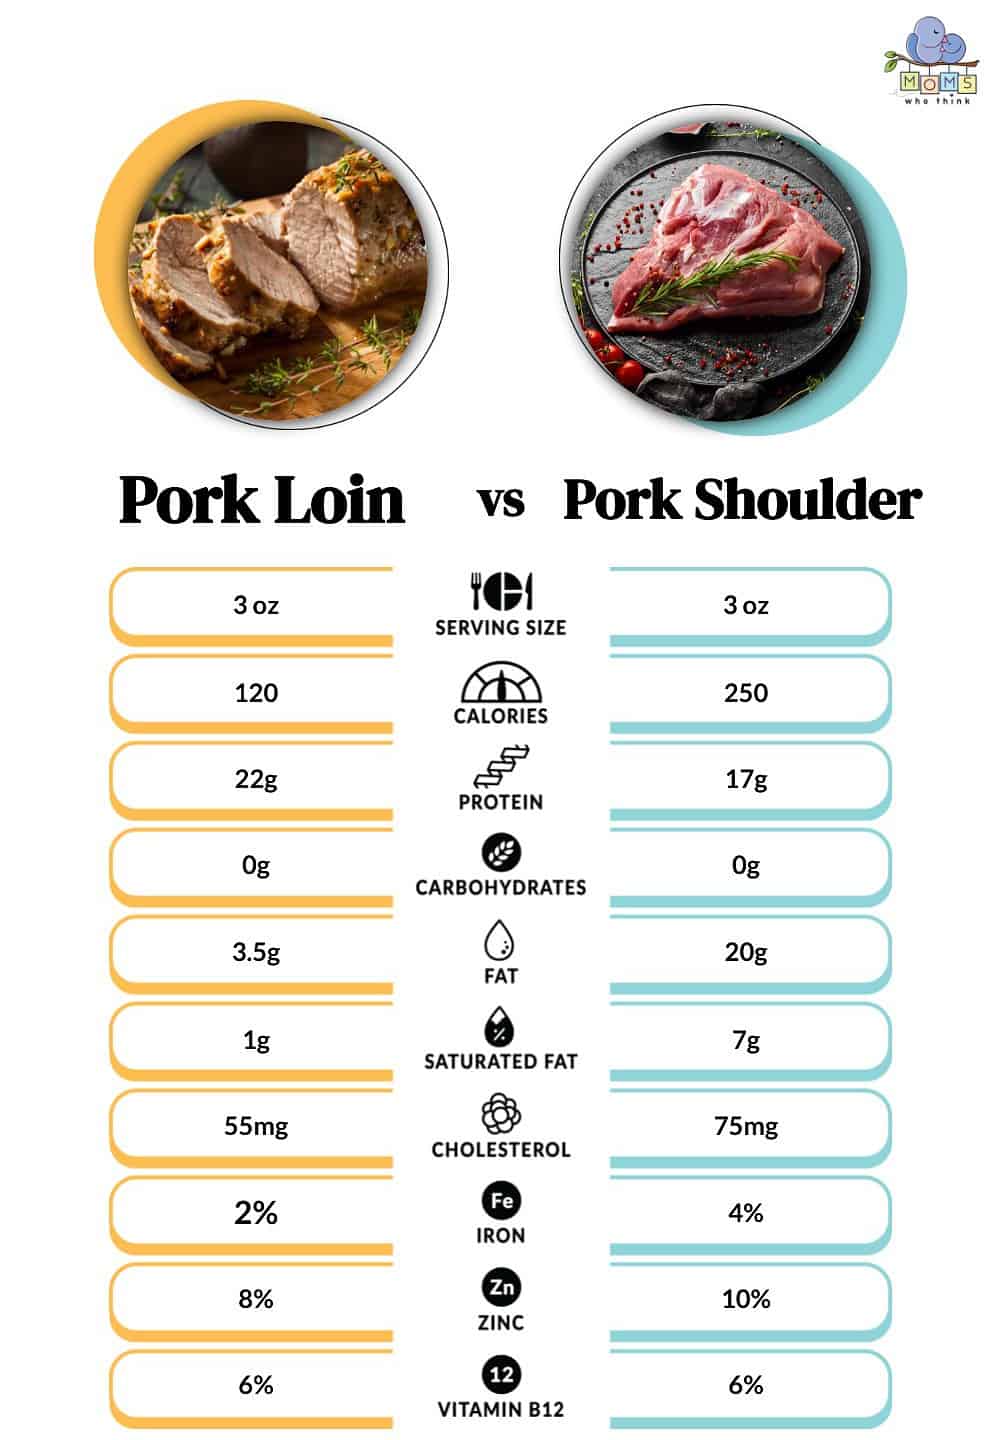 Pork Loin vs Pork Shoulder Nutritional Facts